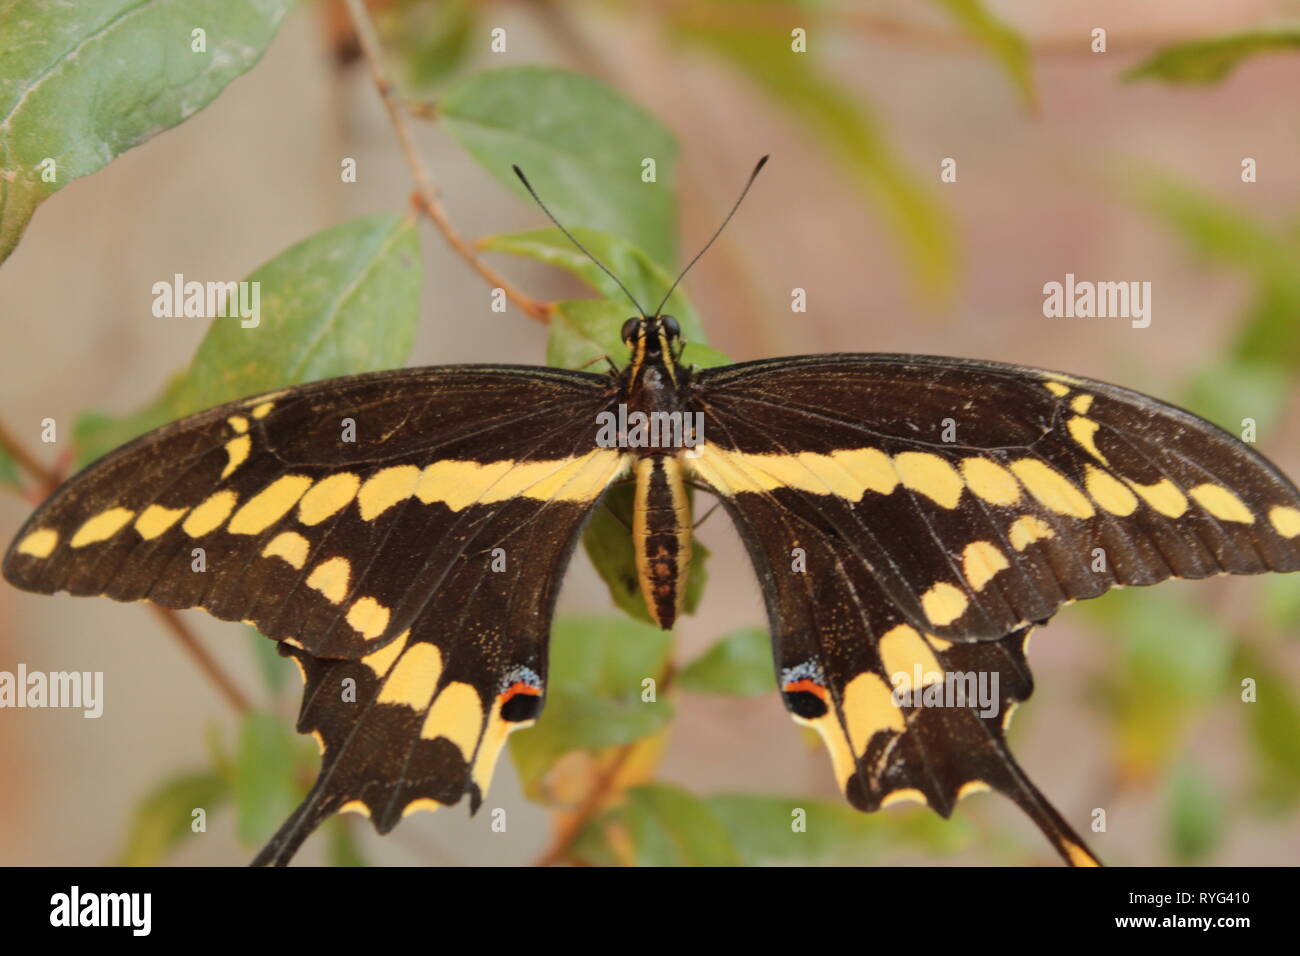 Chiudere de mariposa negra con amarillo pasando en onu Arbol de mi jardín, foto tomada con lente ONU 18-55 mm marca canon a plena luz del día Foto Stock